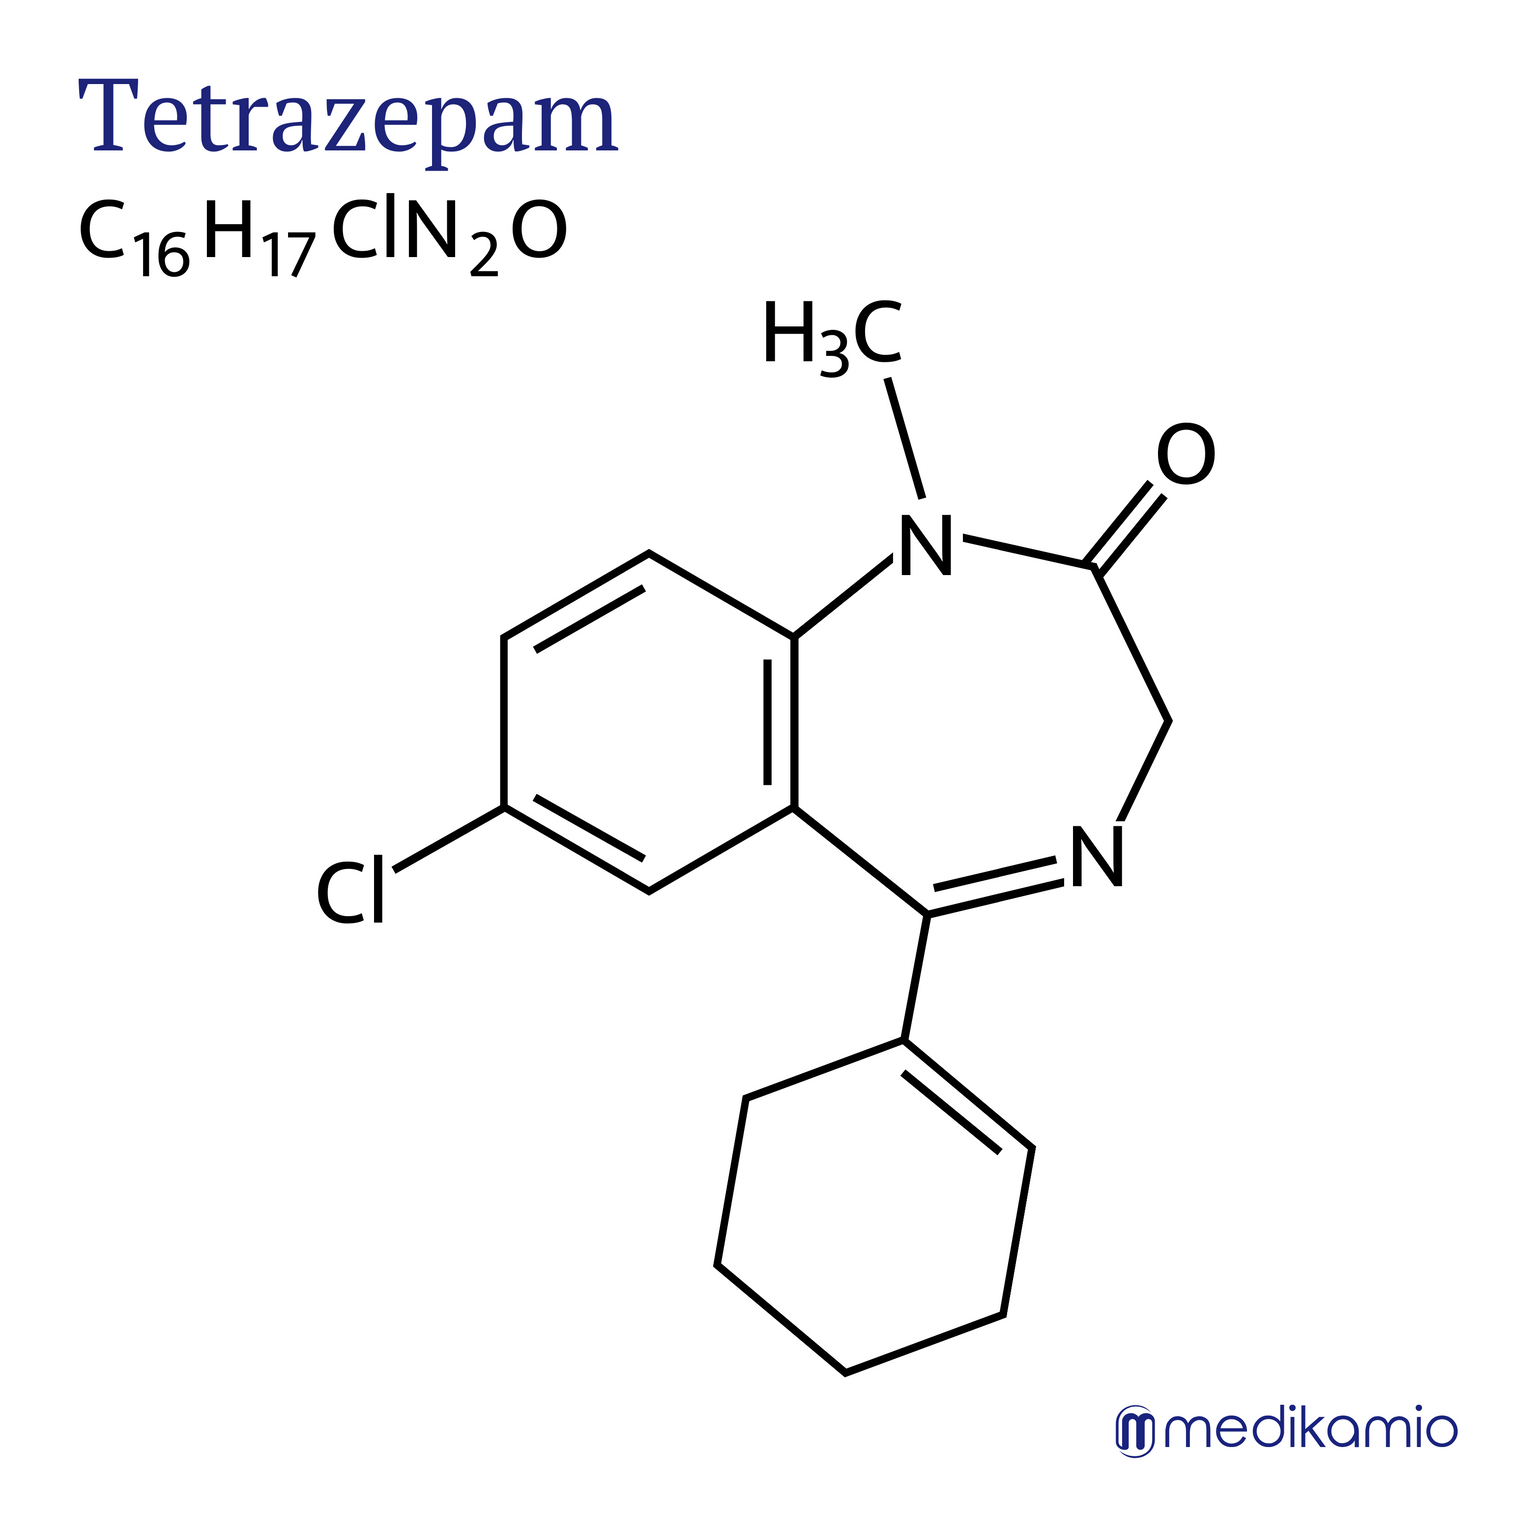 Fórmula estructural gráfica de la sustancia activa tetrazepam